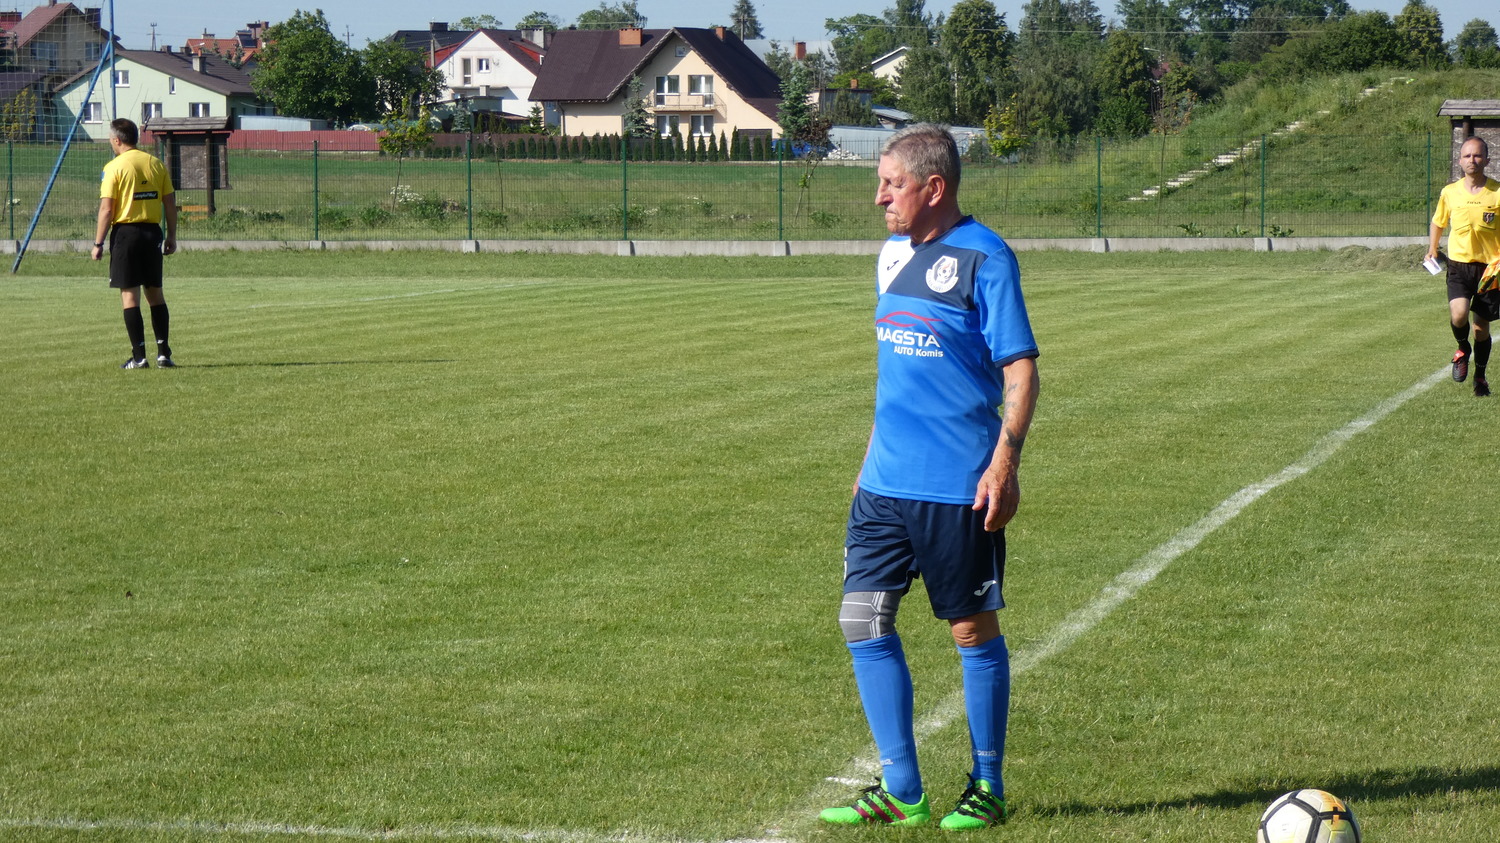 71-letni Bogdan Głąbicki z Hutnika Huta Czechy zdobywa gola w meczu z Sępem  - Maj - 2018 - Podsumowania - Aktualności - sep.zelechow.net